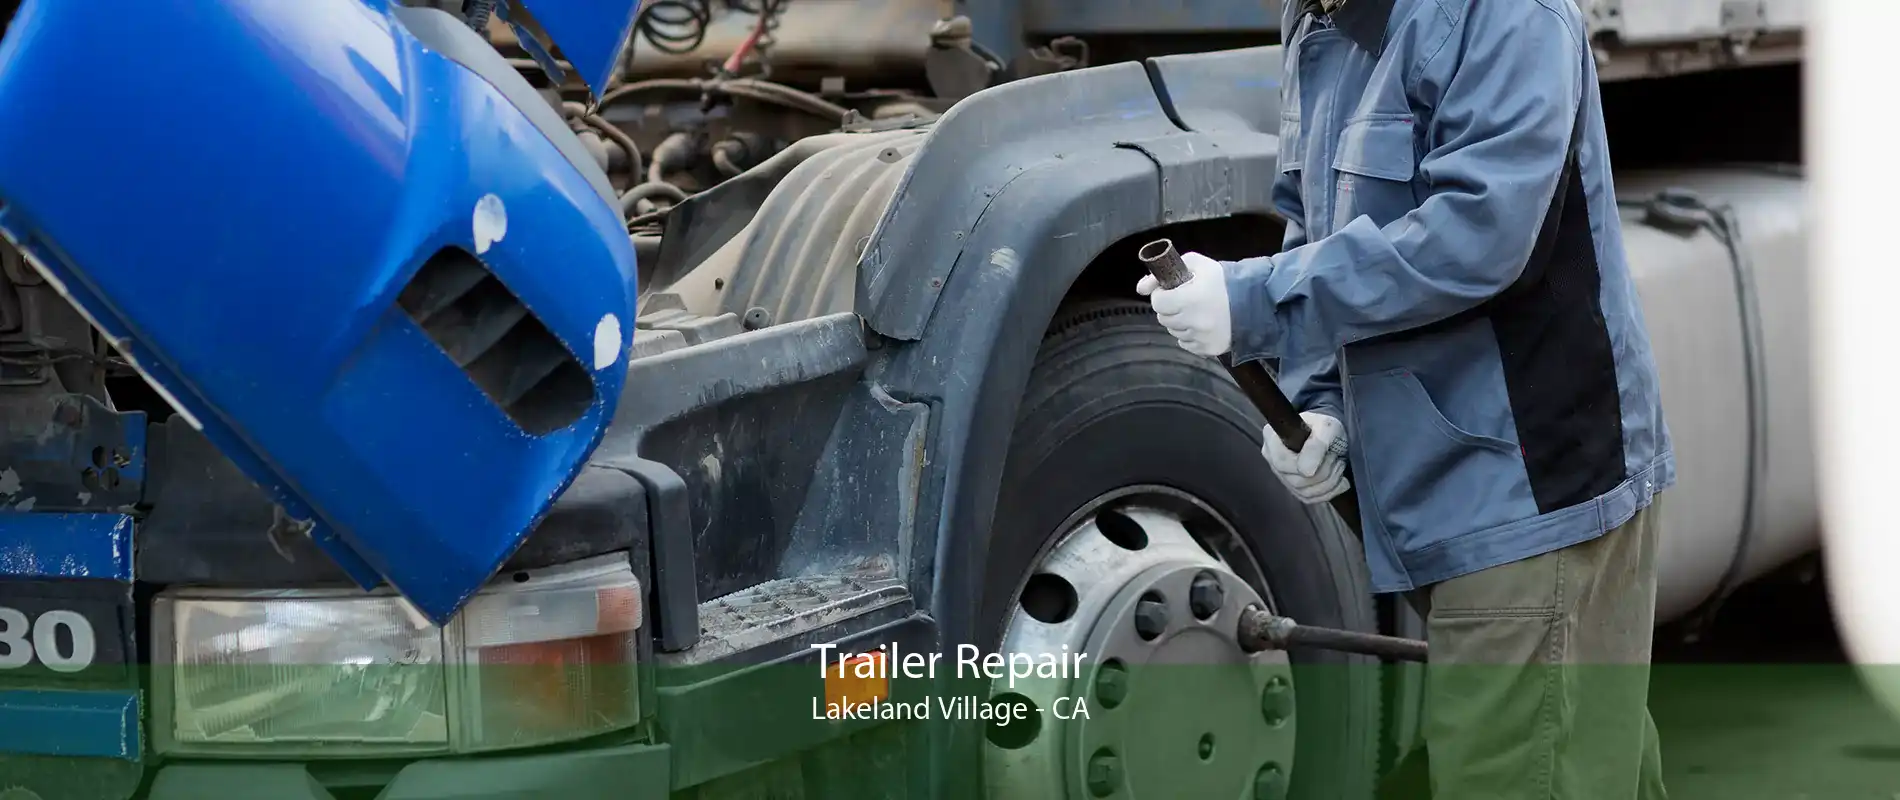 Trailer Repair Lakeland Village - CA